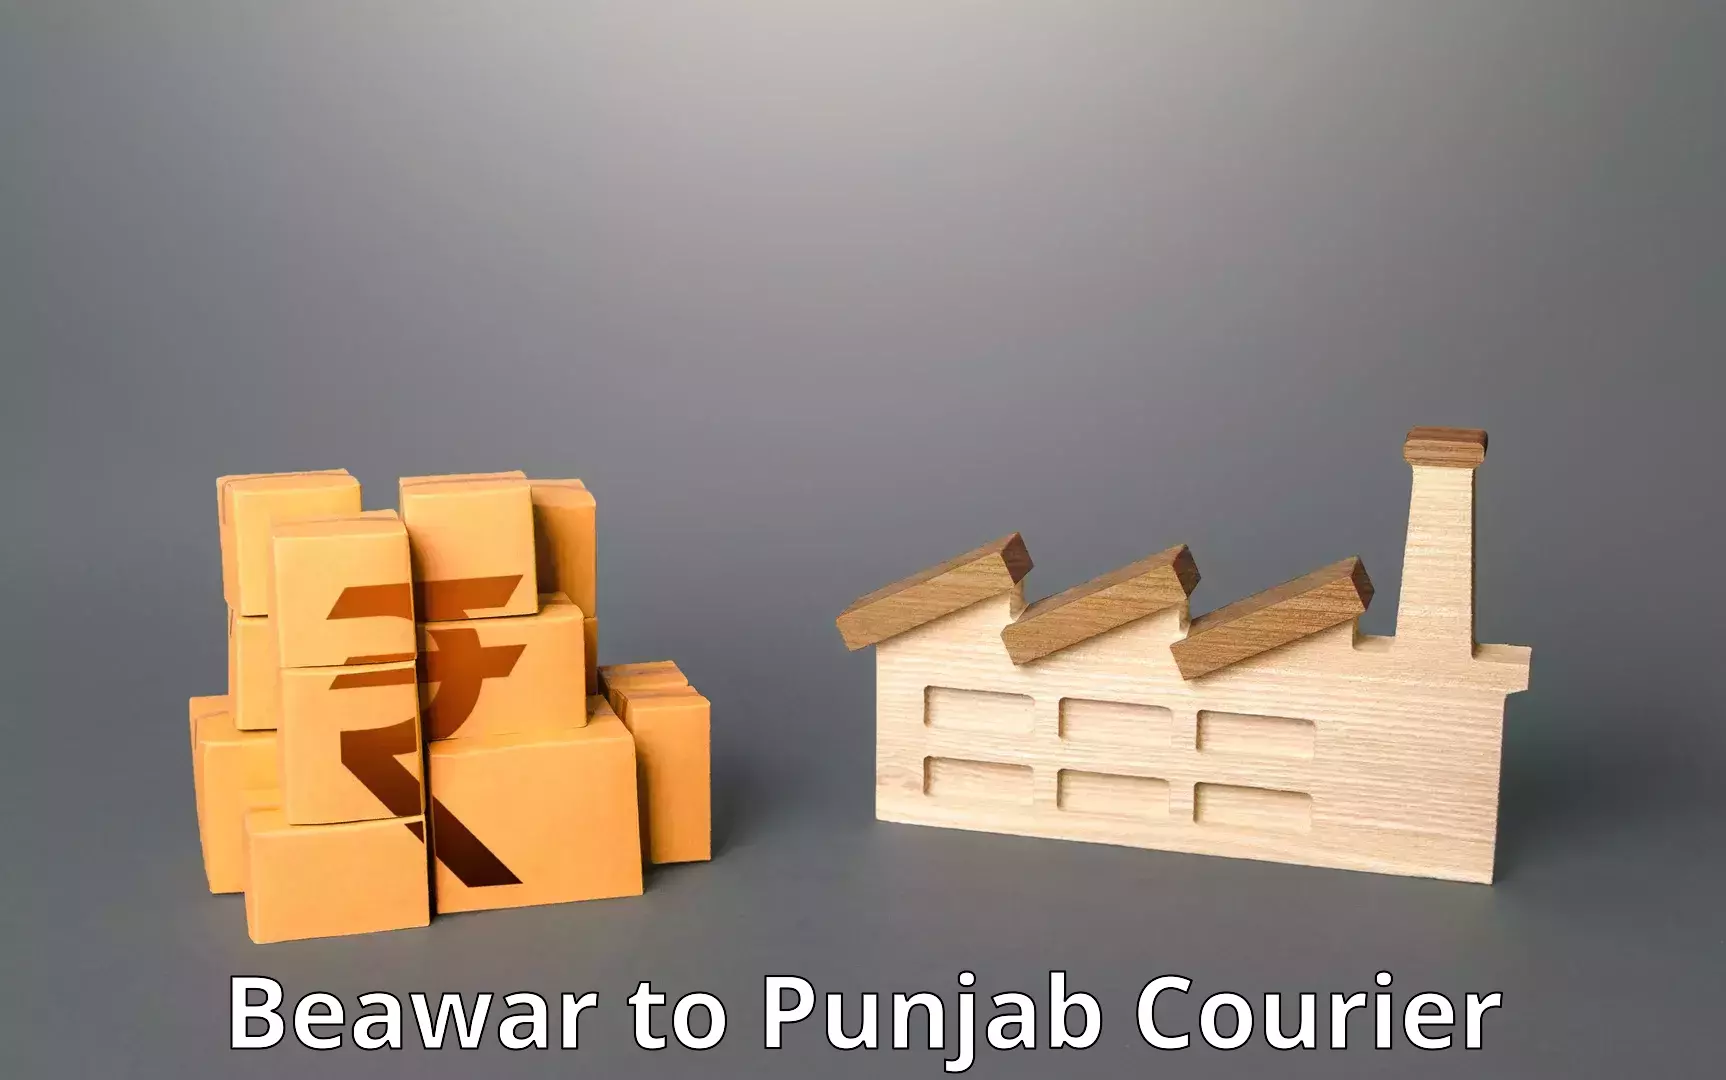 Professional courier handling Beawar to Punjab